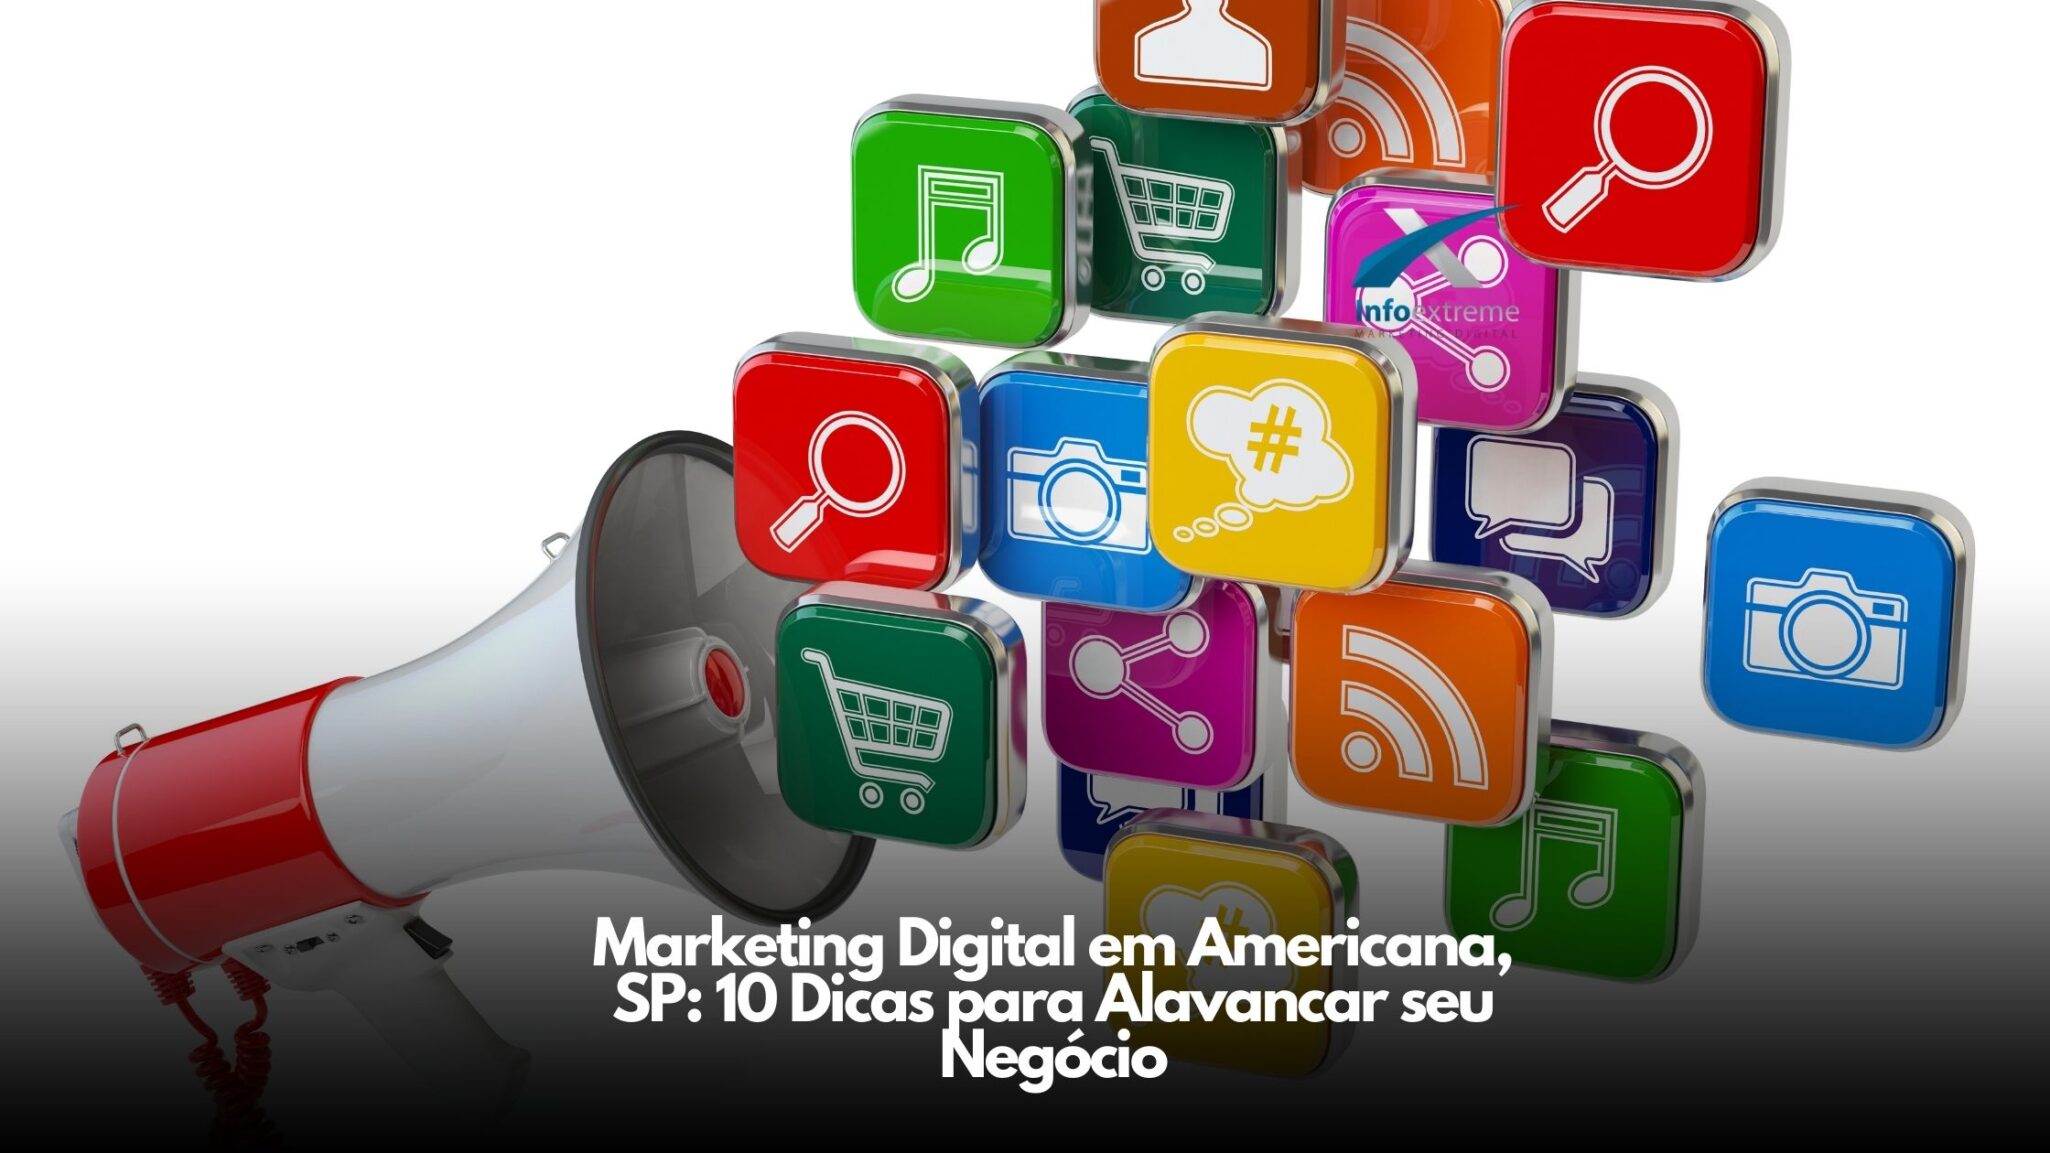 Marketing Digital em Americana, SP: 10 Dicas para Alavancar seu Negócio